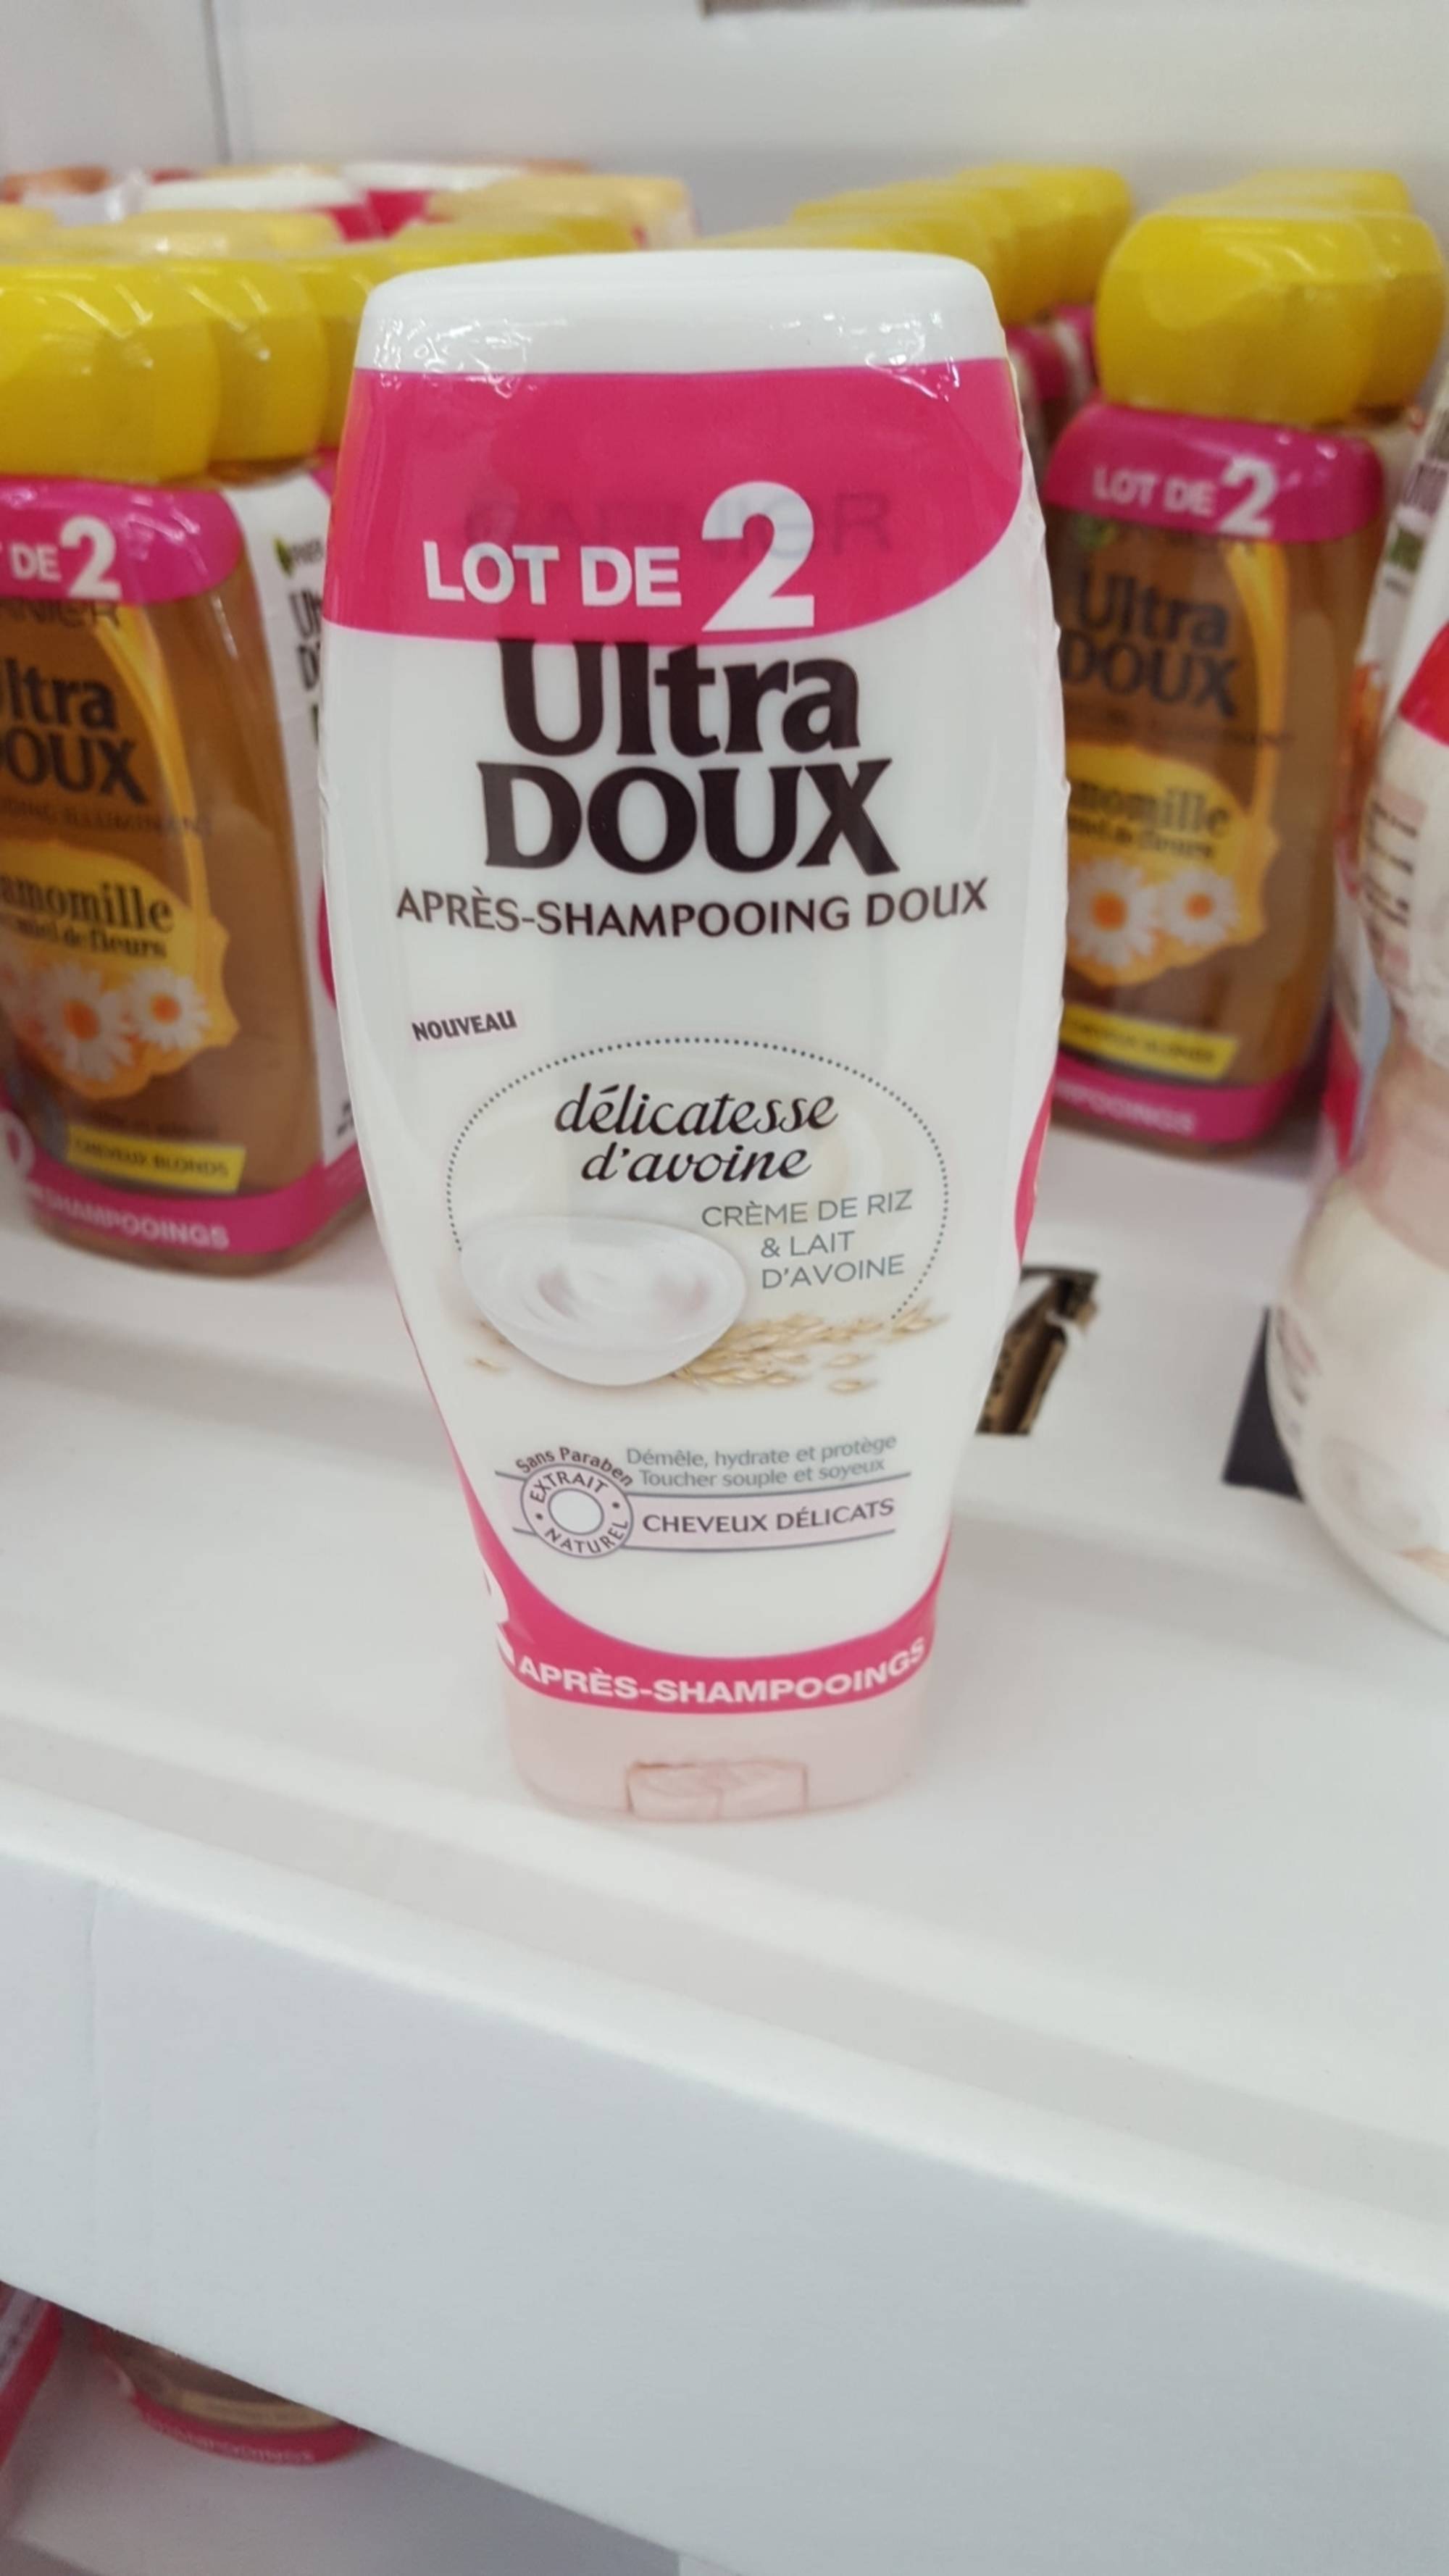 GARNIER - Ultra doux - Après-shampooing doux crème de riz & lait d'avoine